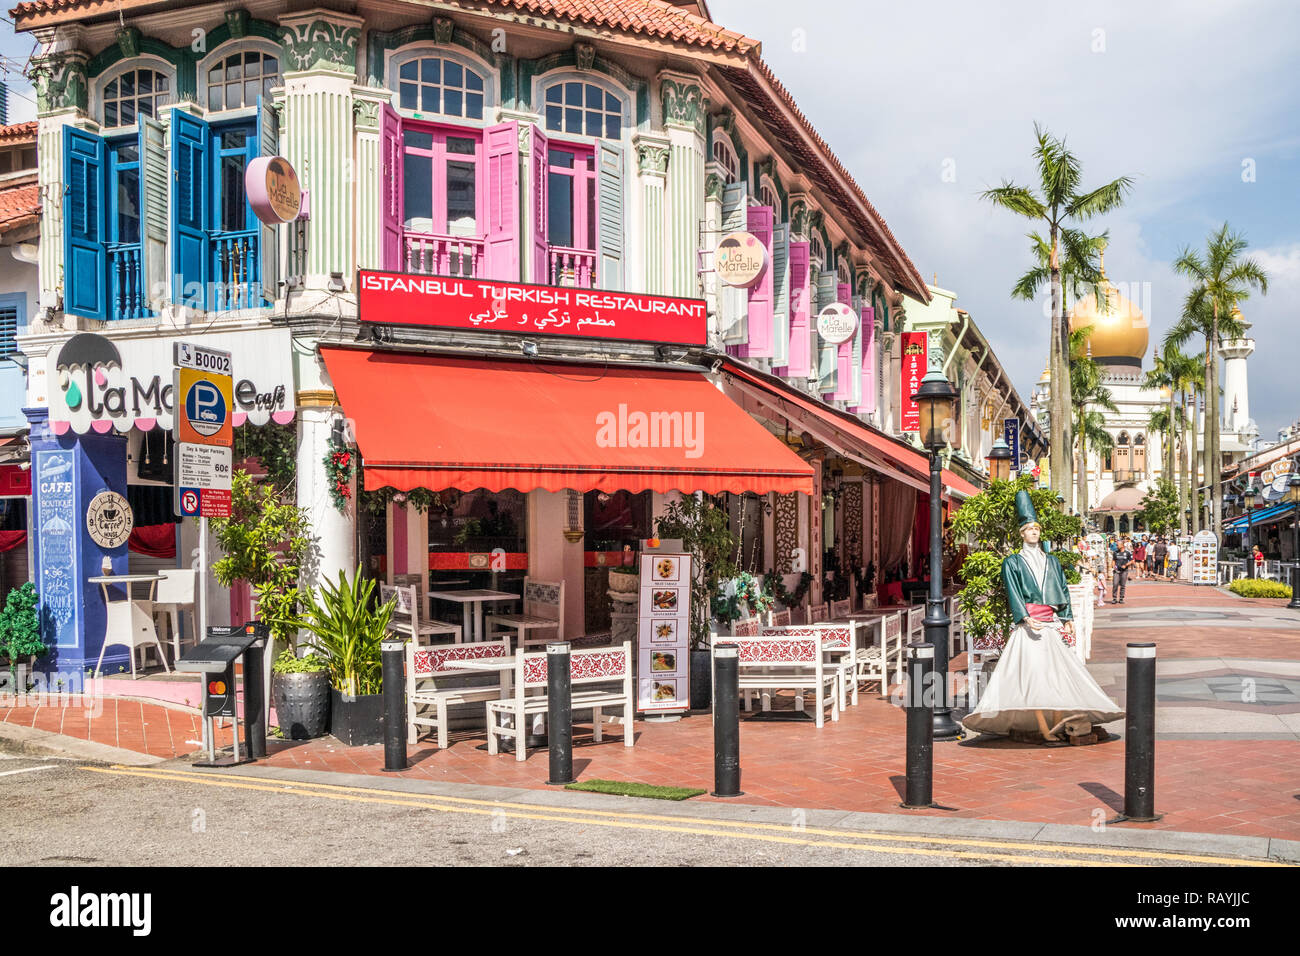 Singapur - 22. Dezember 2018: Das türkische Restaurant im arabischen Viertel. Dies ist in der Kampong Glam Bereich Stockfoto